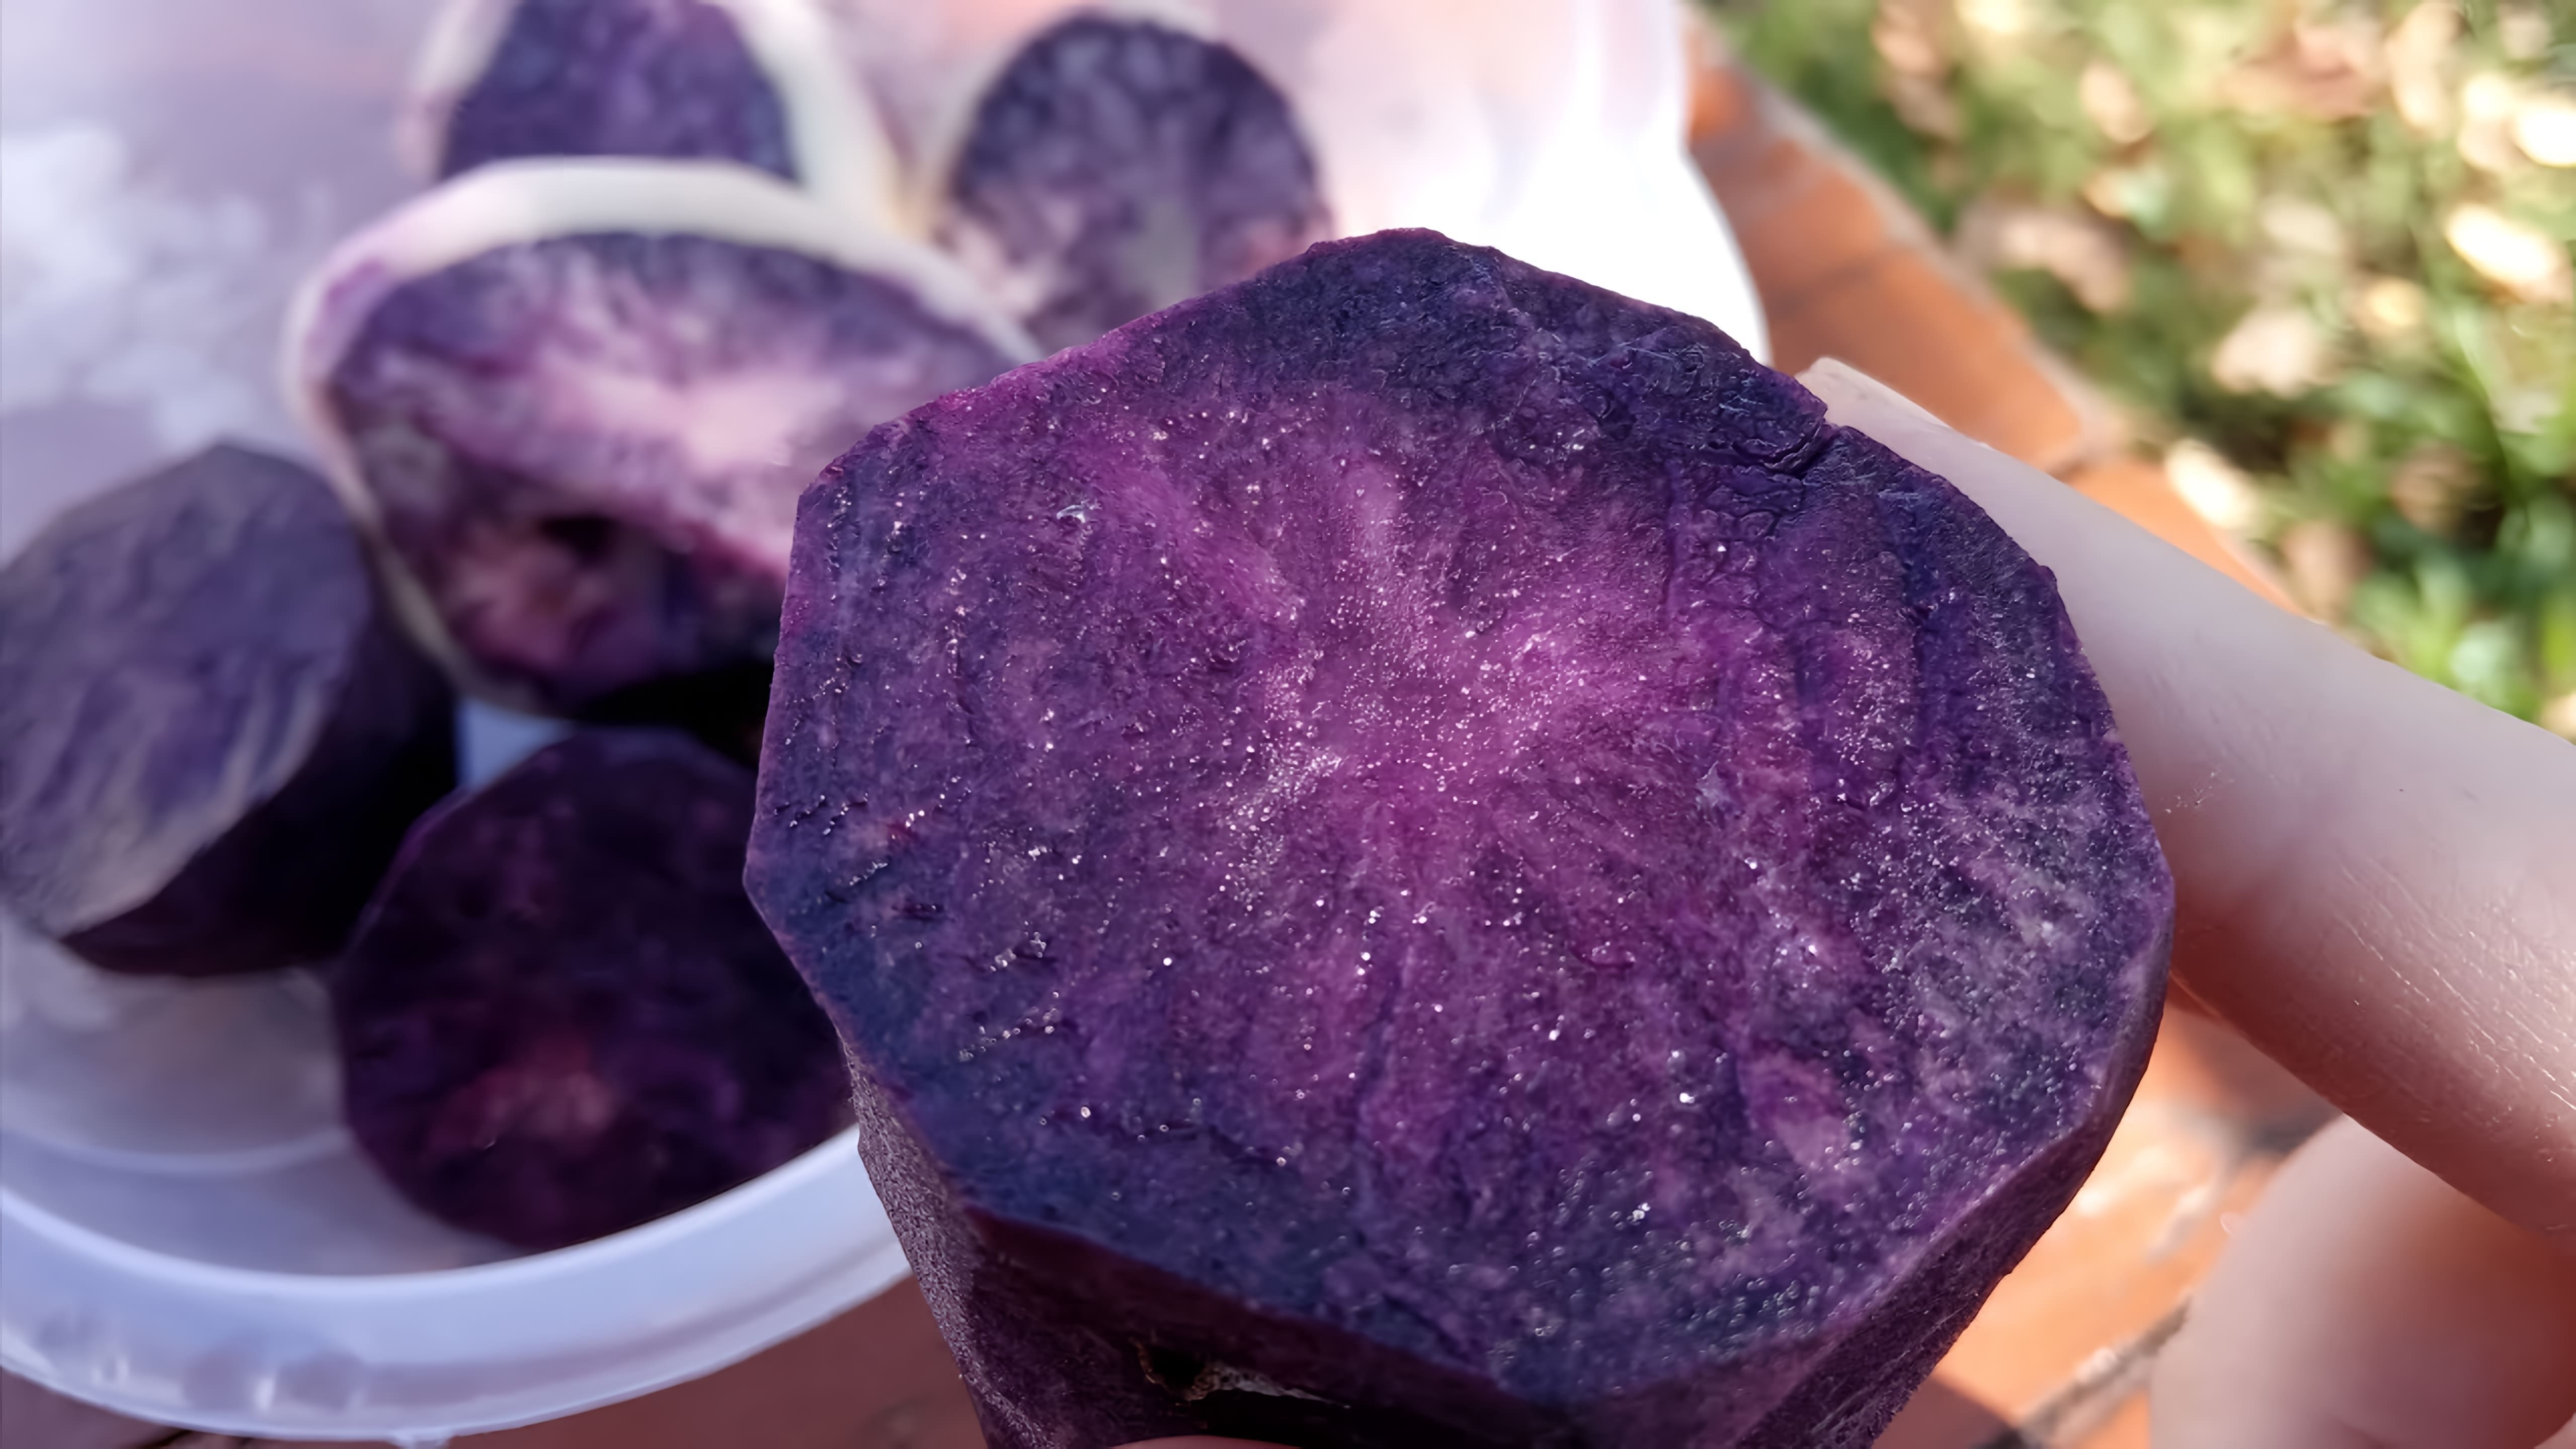 В этом видео девушка показывает и пробует на вкус фиолетовую картошку, которая отличается от обычной